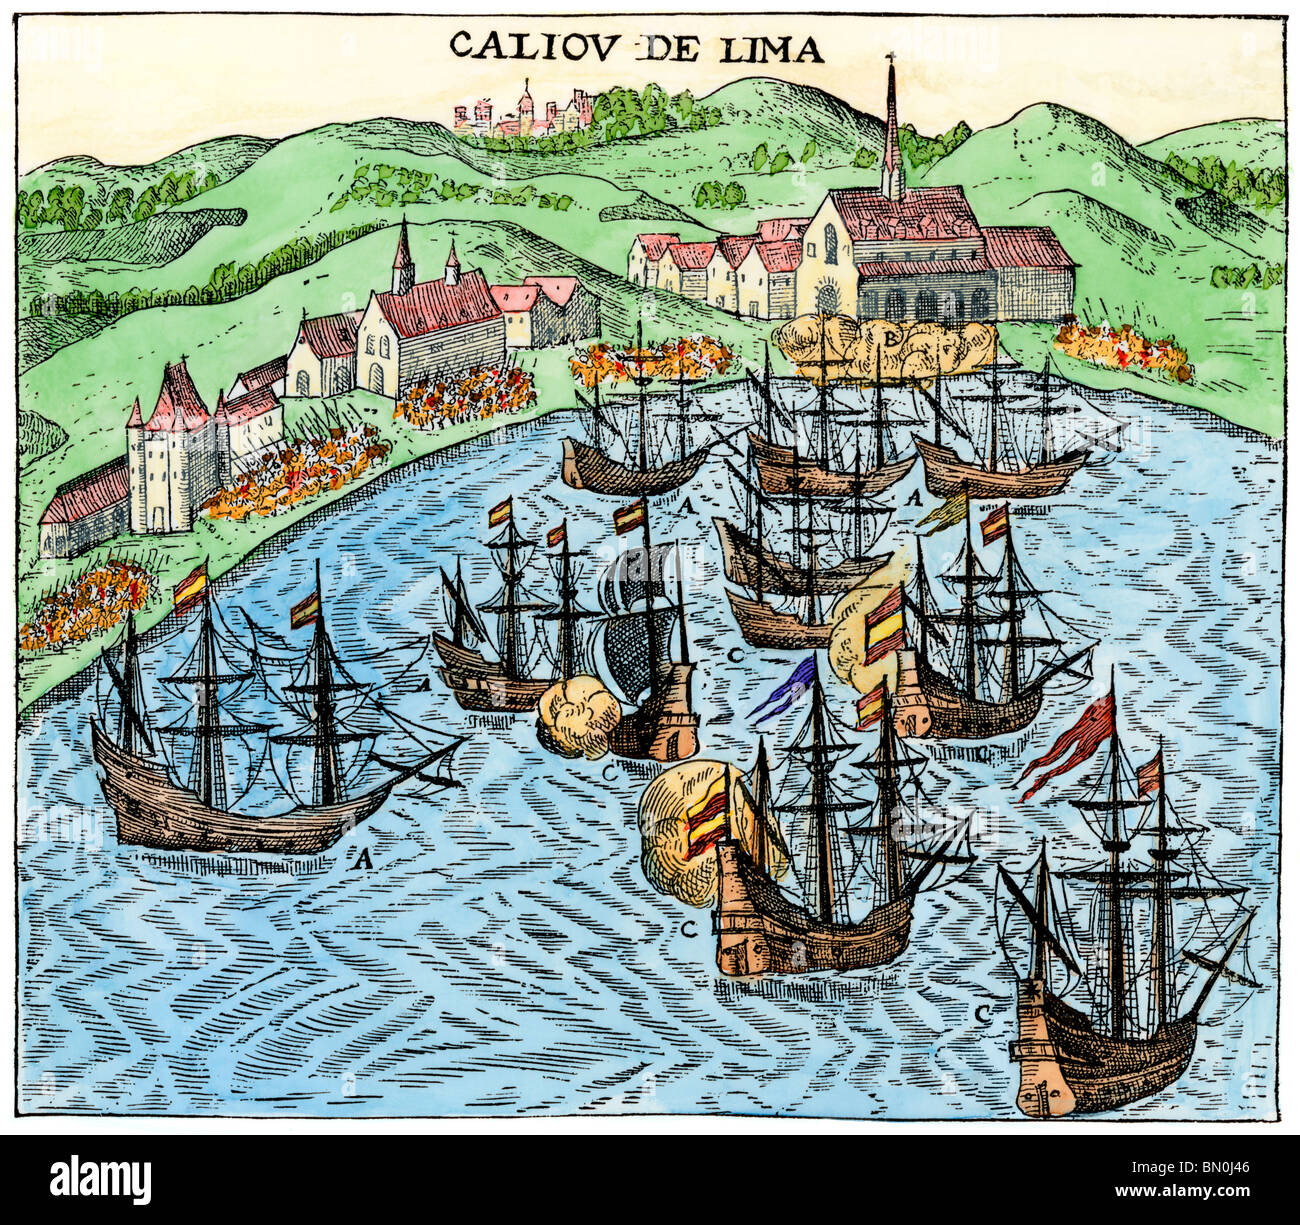 L'empire colonial espagnol port de Callao de Lima, Pérou, vers 1620. À la main, gravure sur bois Banque D'Images